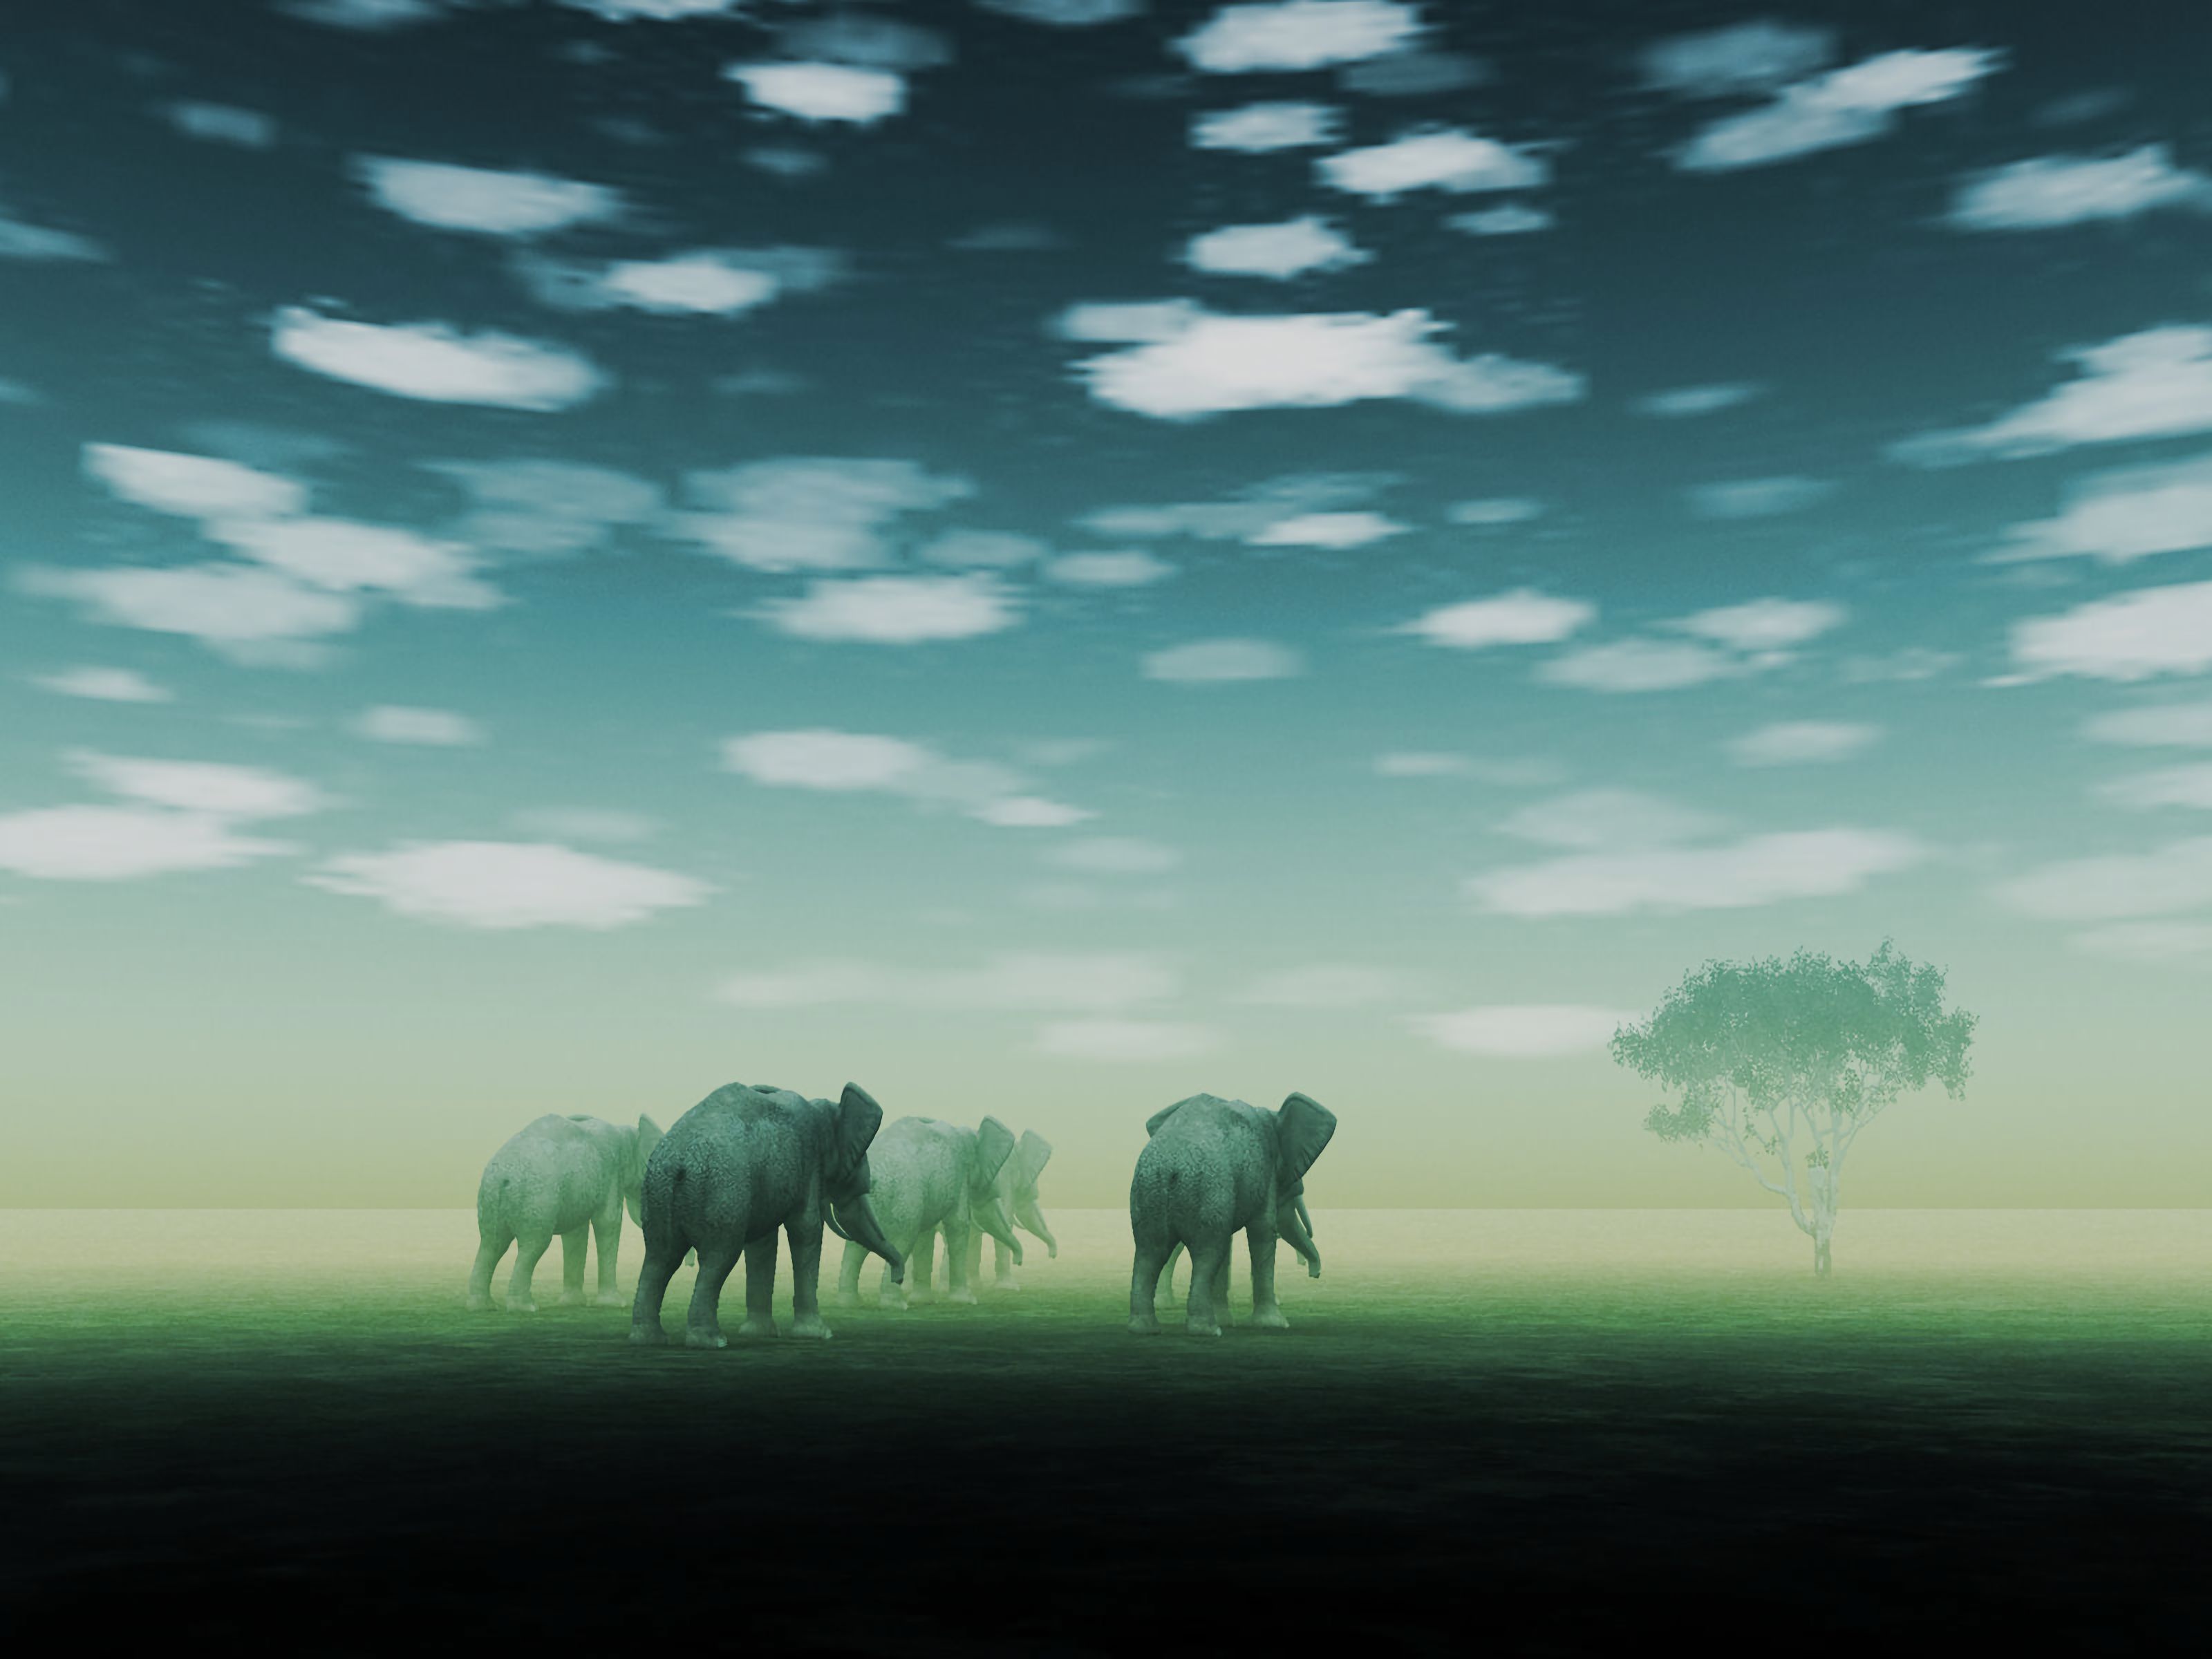 art, fog, mirage, desert, elephants